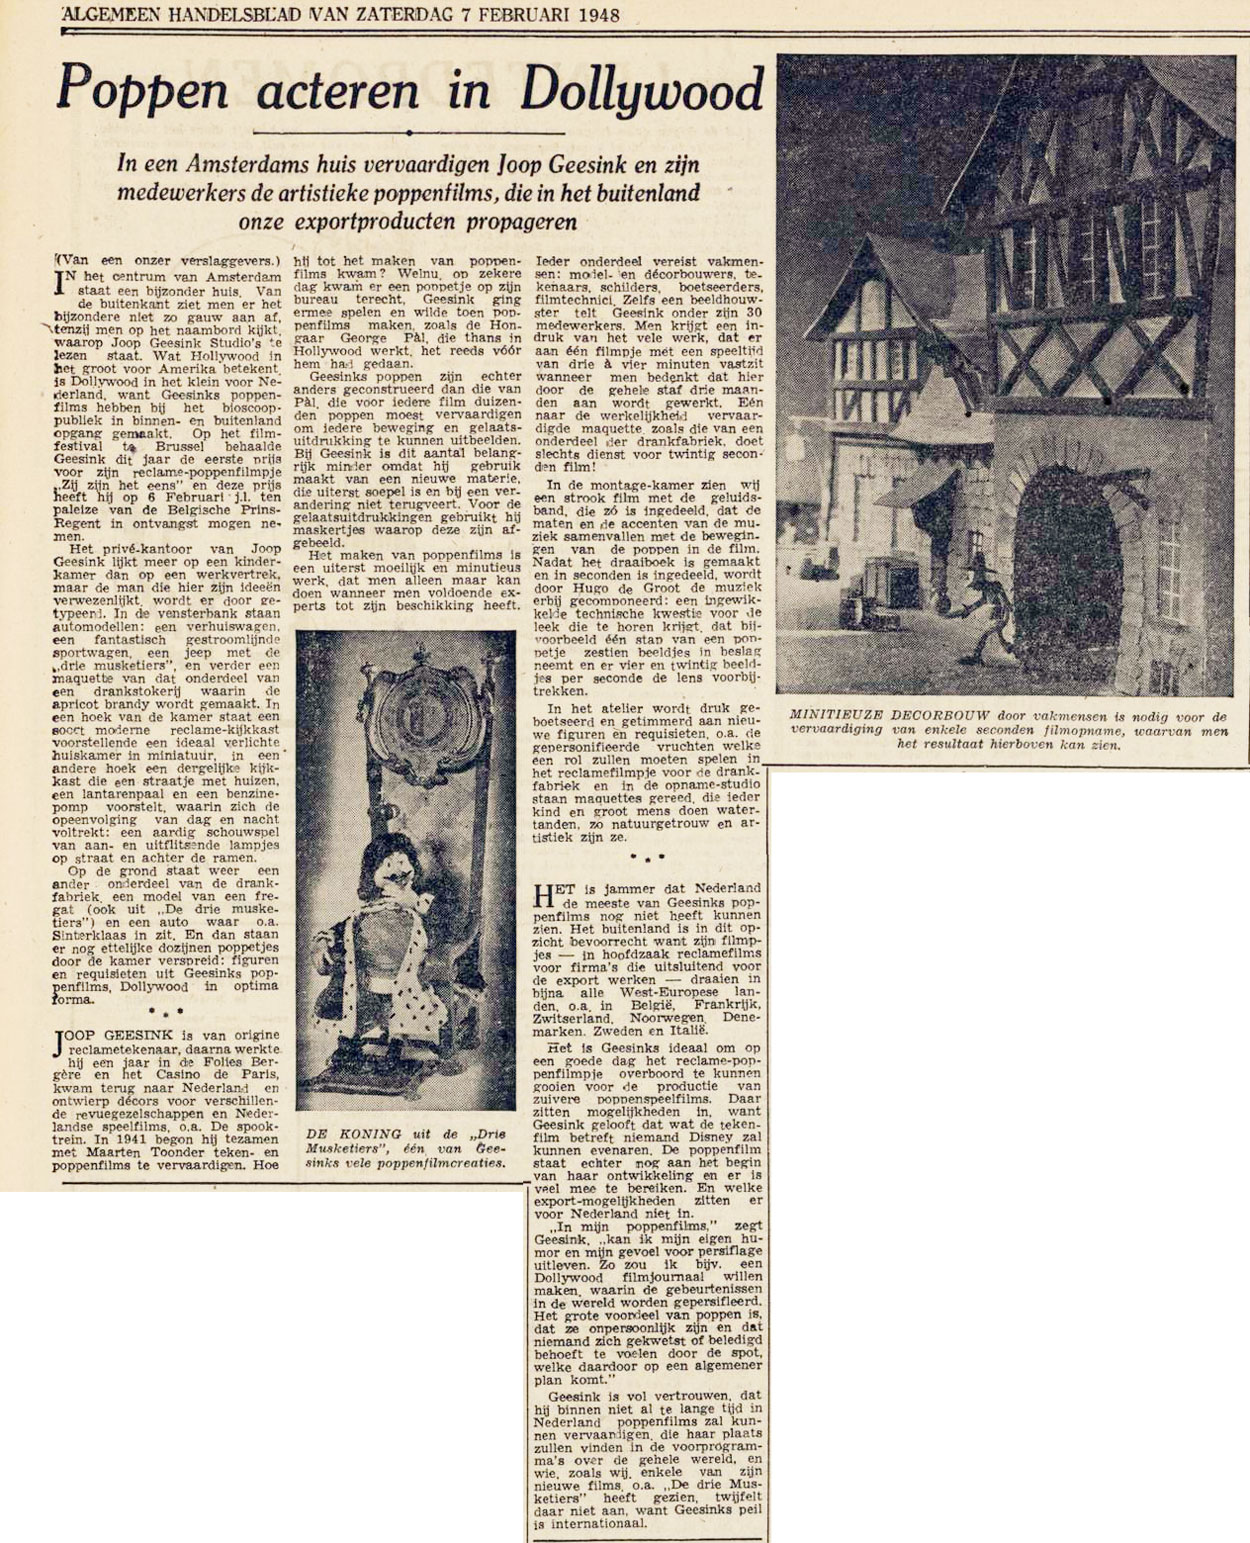 Bron: Algemeen Handelsblad, 7 februari 1948